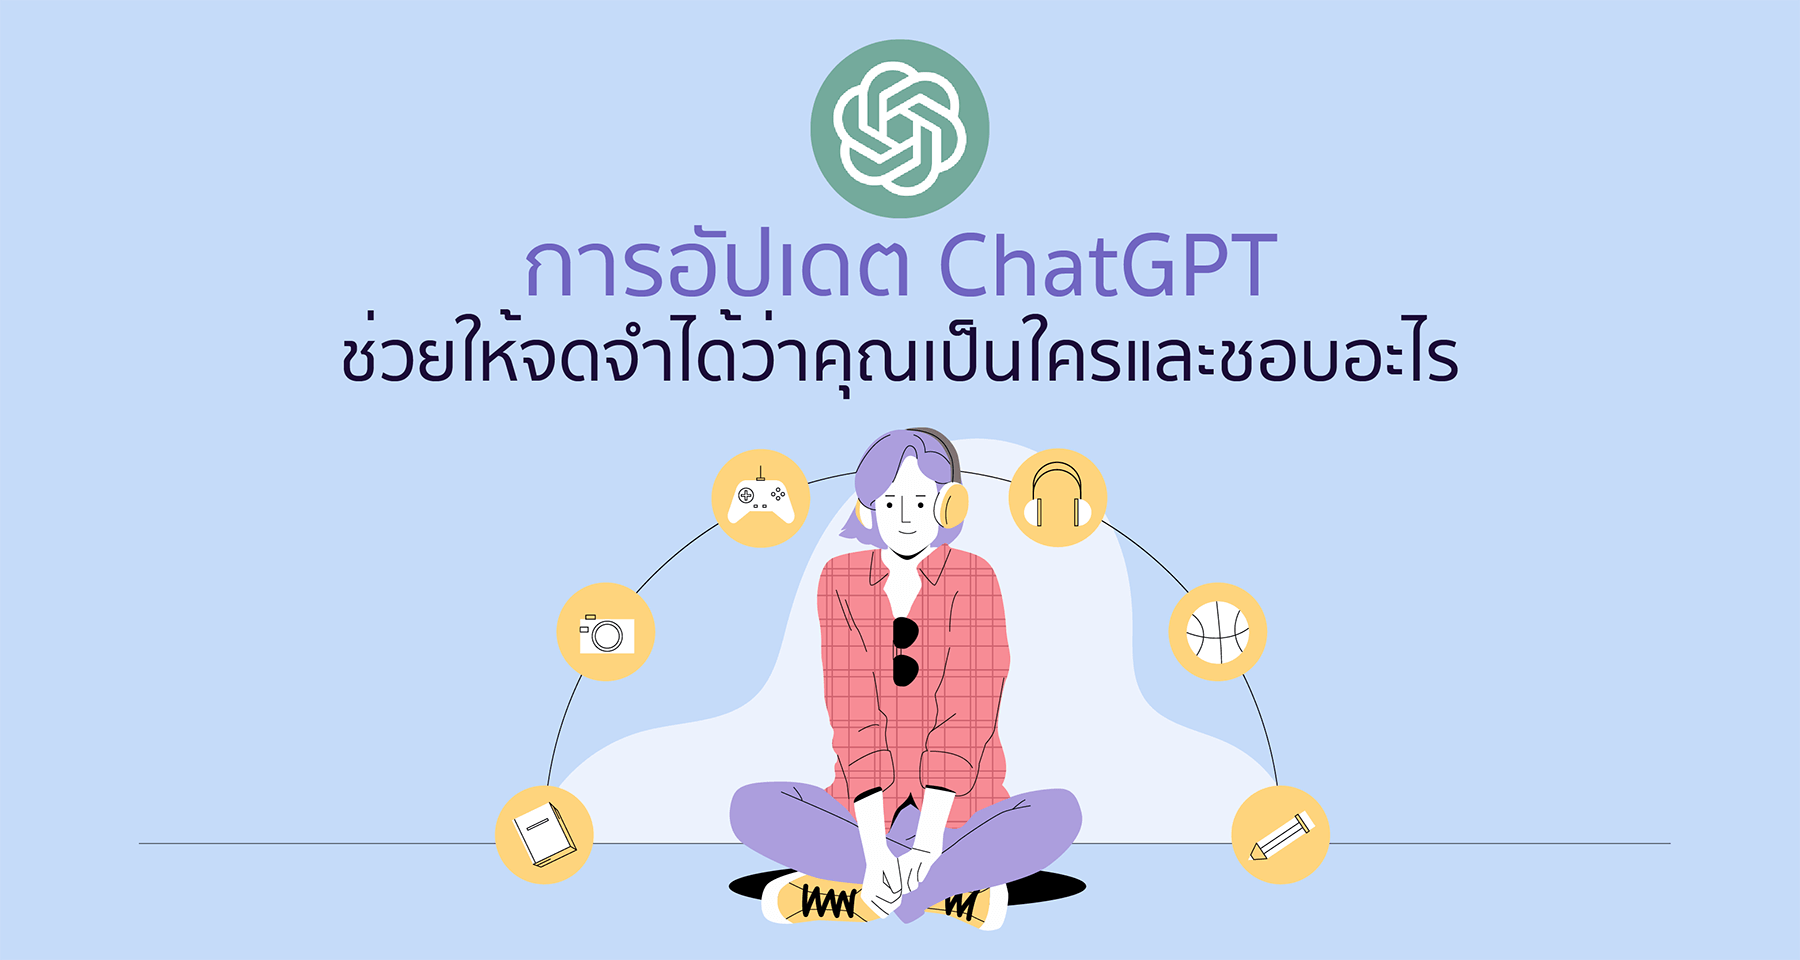 การอัปเดต ChatGPT ช่วยให้จดจำได้ว่าคุณเป็นใครและชอบอะไร